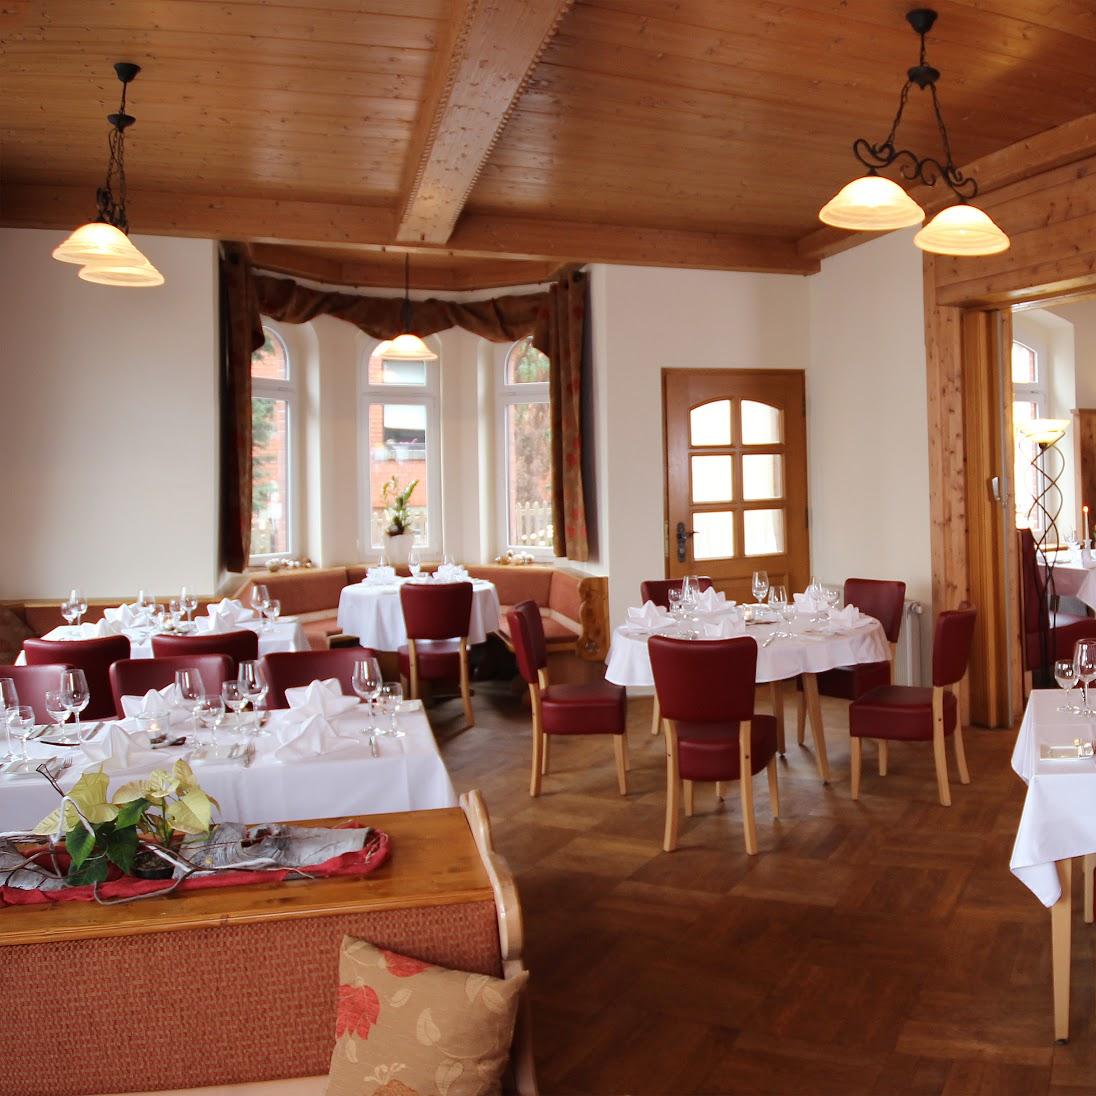 Restaurant "Restaurant Forsthaus Marcus Otto" in Reinsdorf